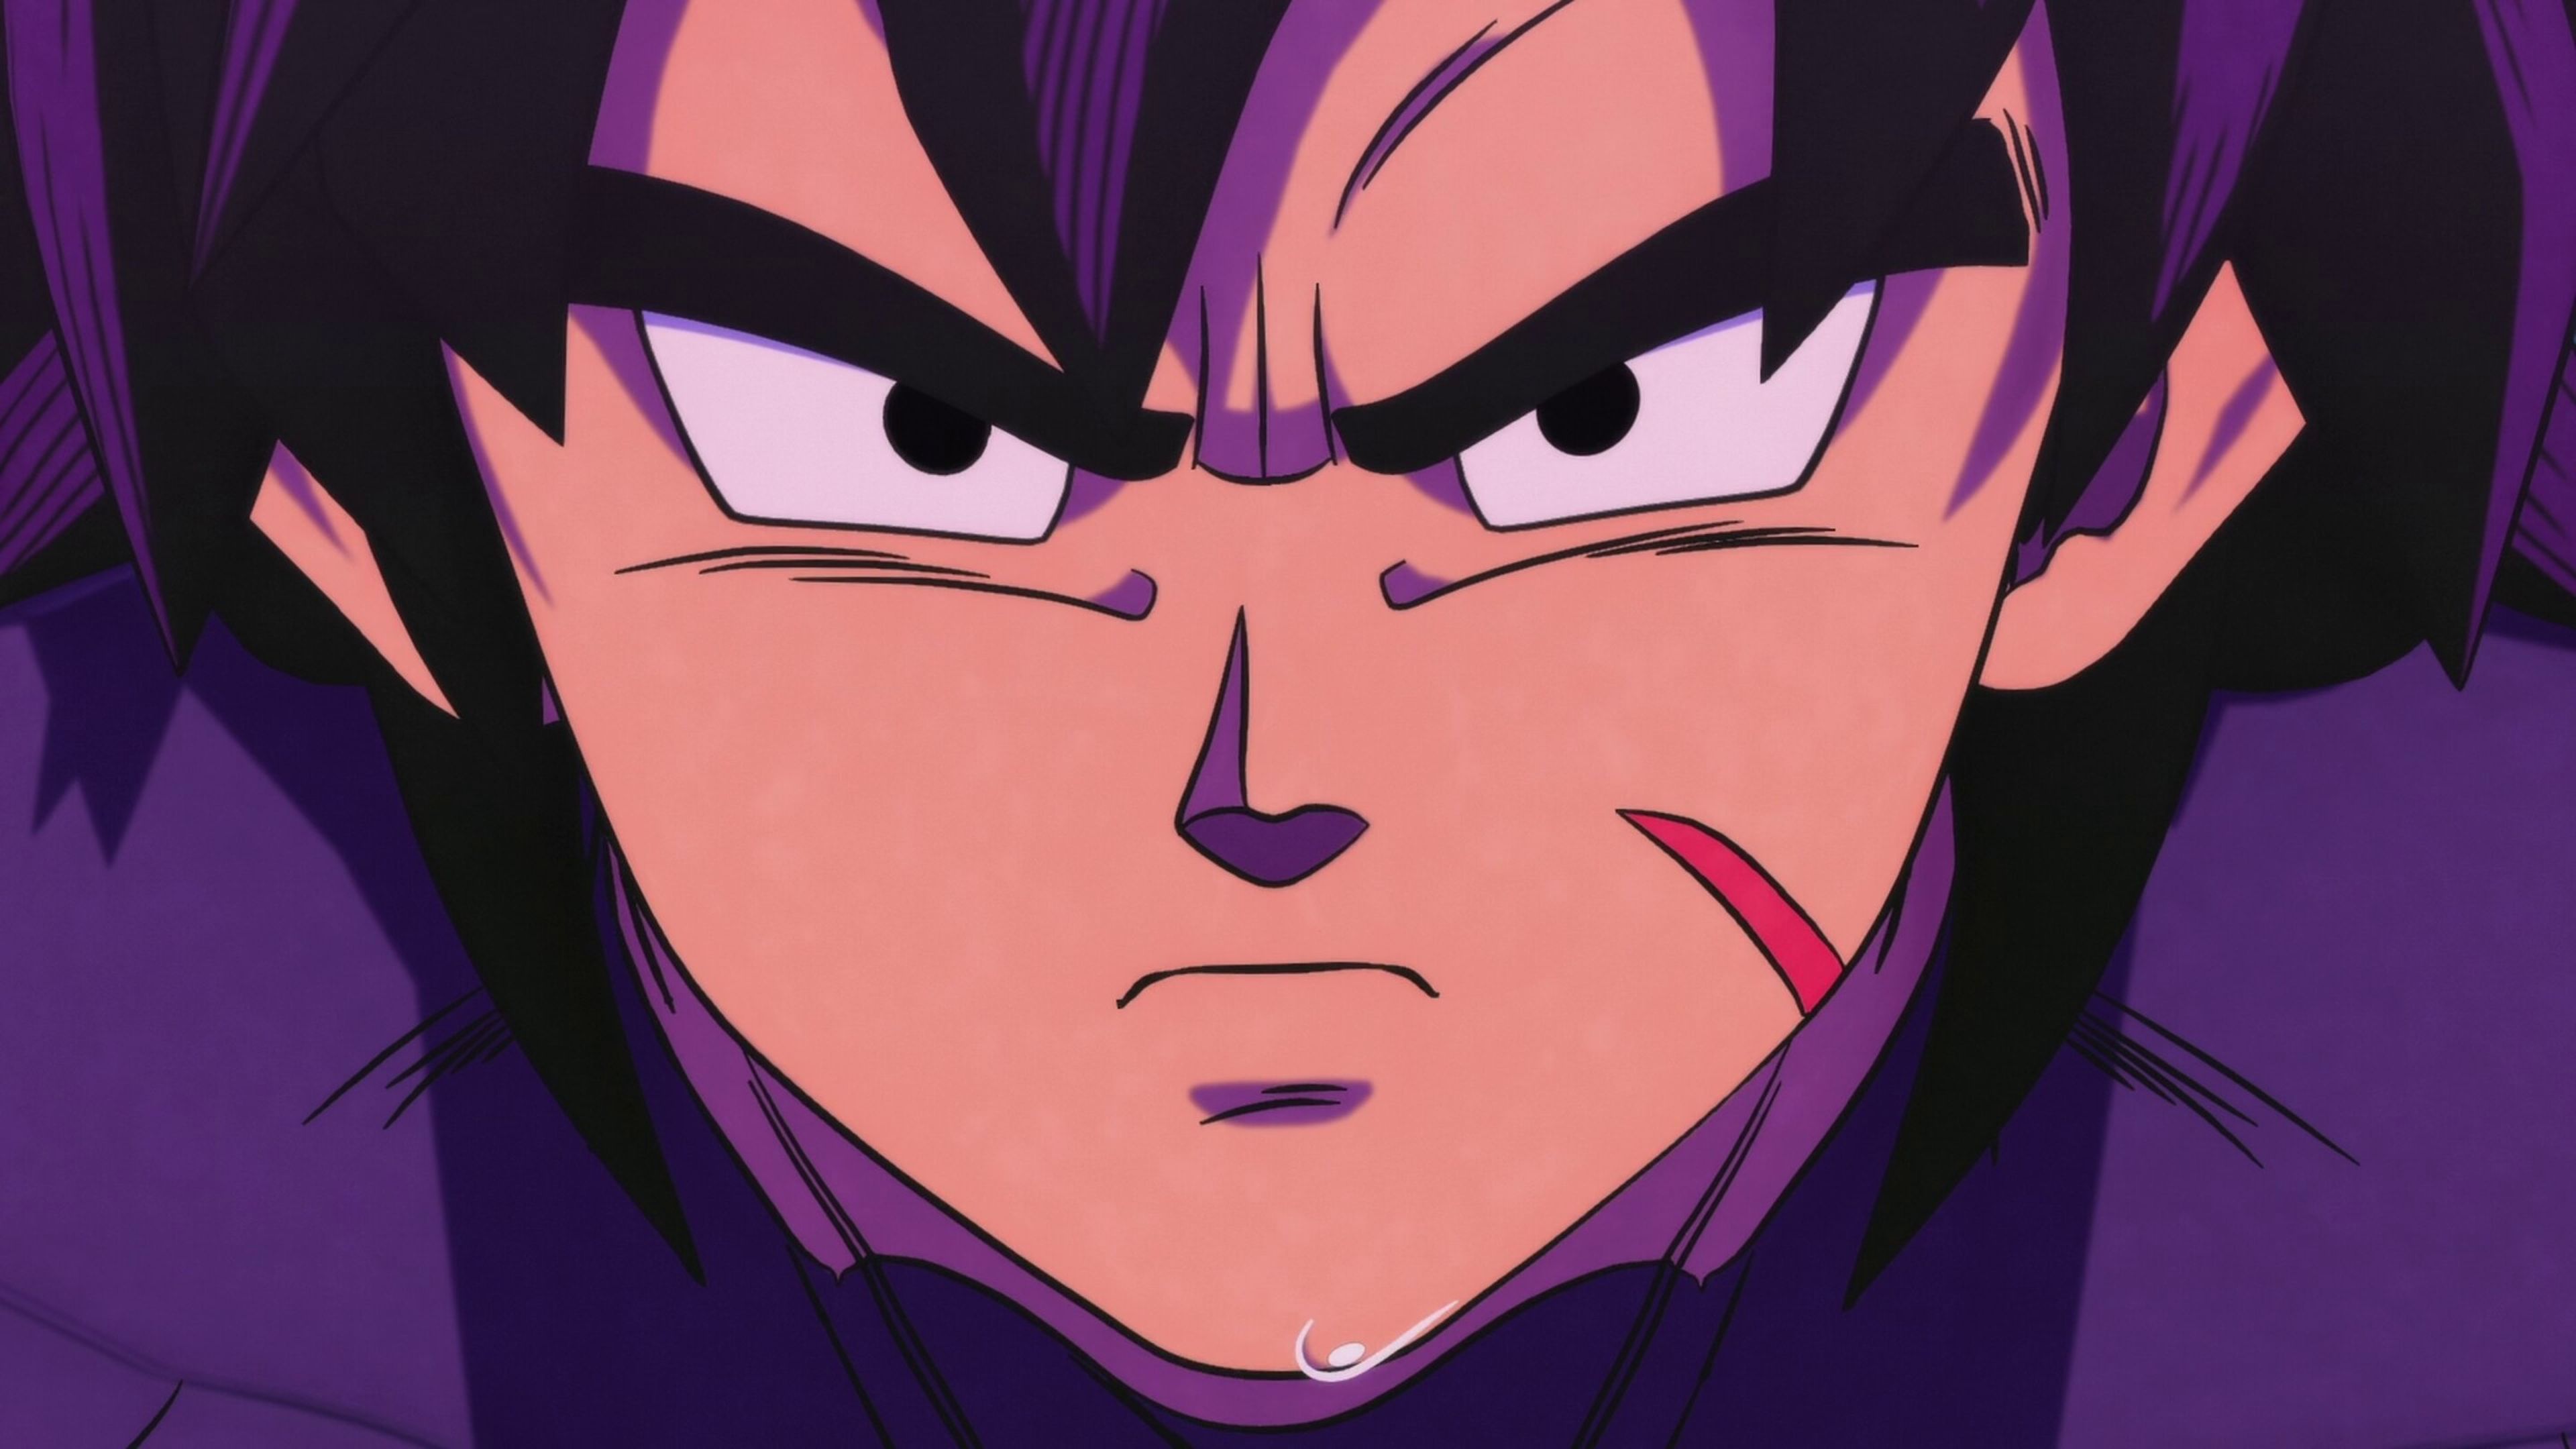 Dragon Ball Super - Broly asimila su nuevo poder en su segundo enfrentamiento contra Goku gracias a esta increíble animación